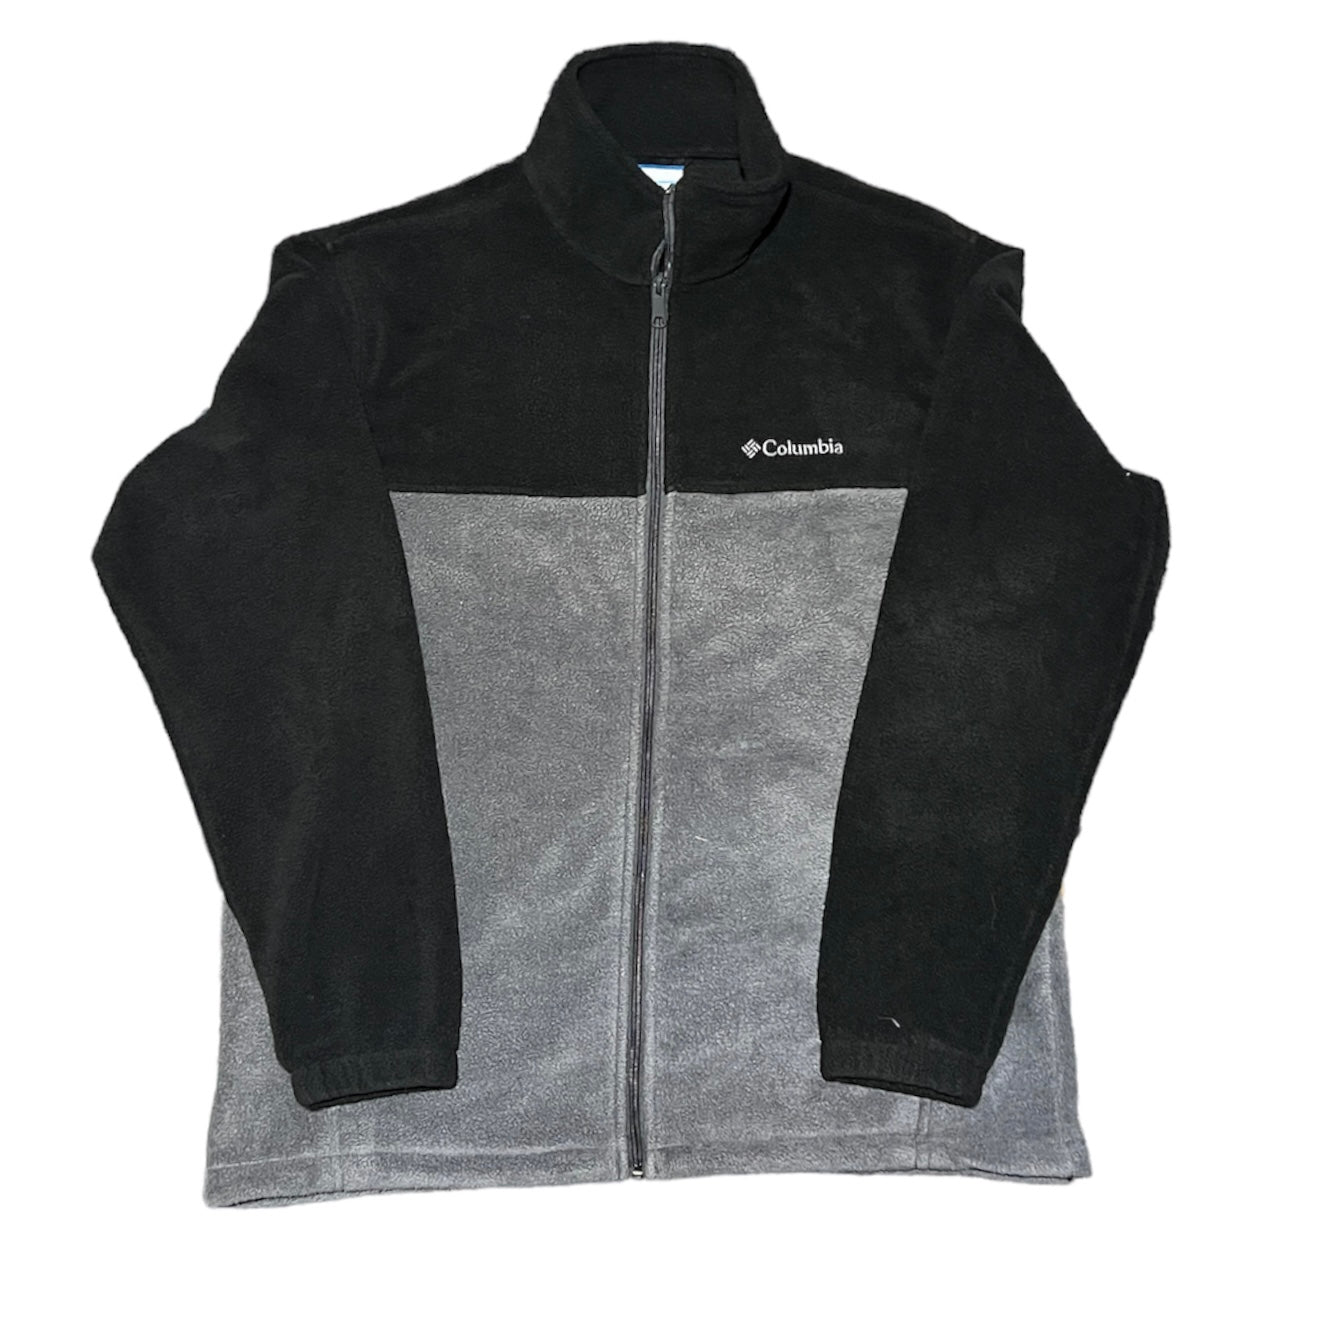 Columbia Fleece Jacket Full Zip Gray/Black Mock Neck Long Sleeve Size Large